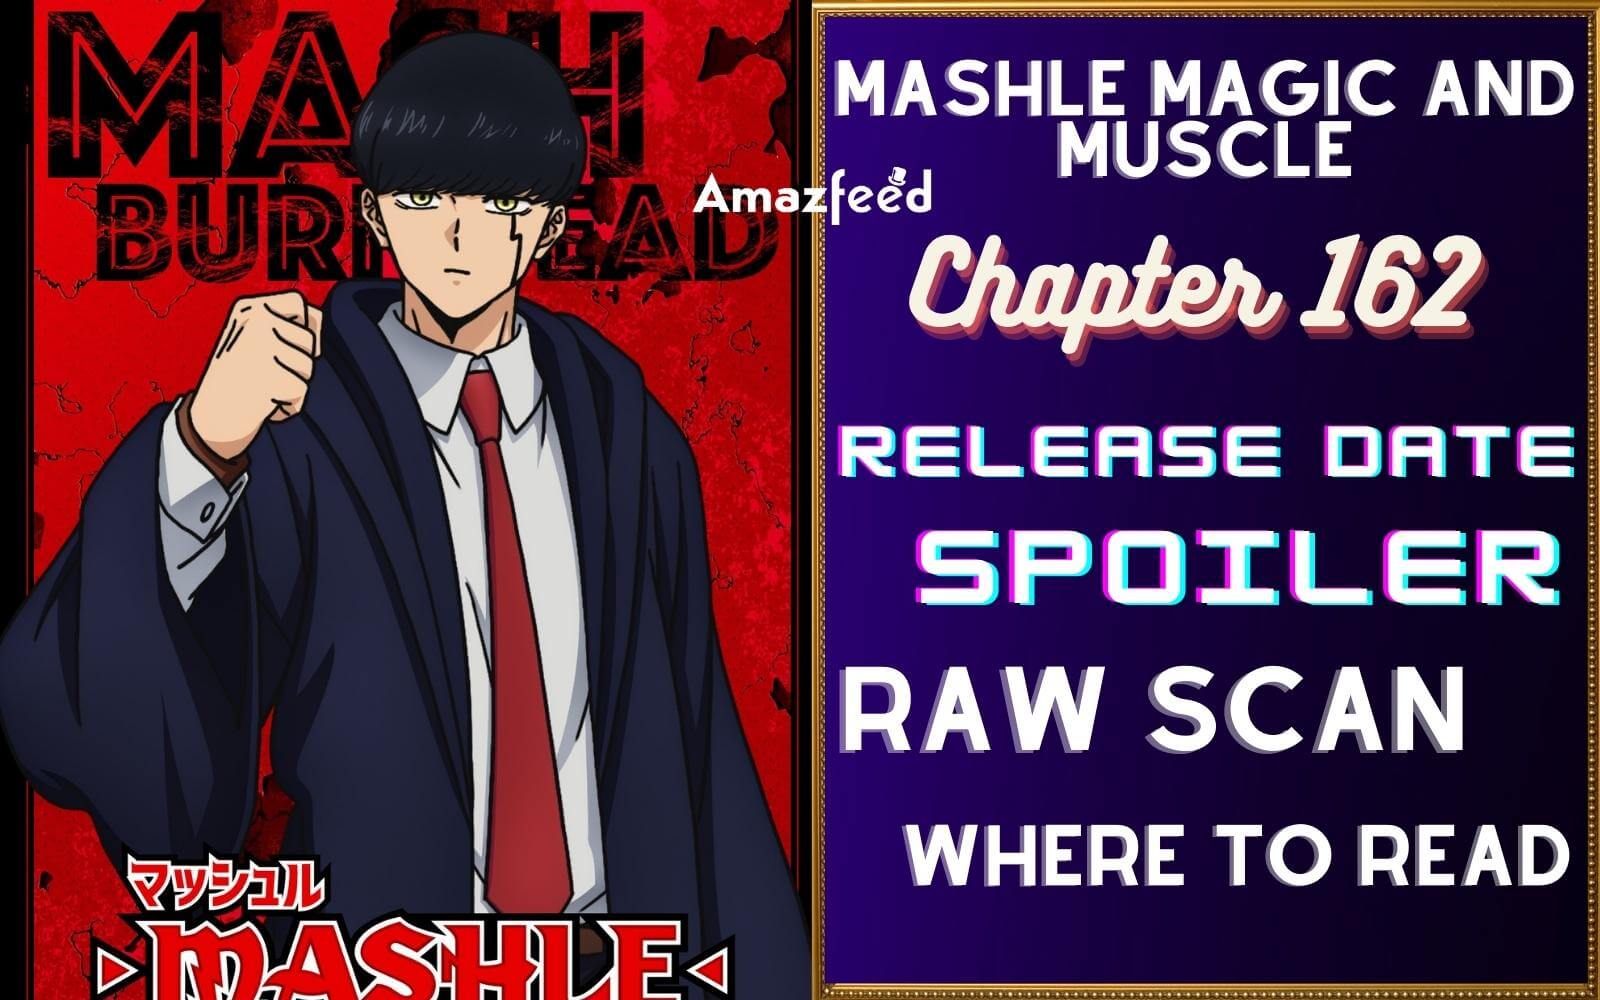 Mashle manga ends with chapter 162